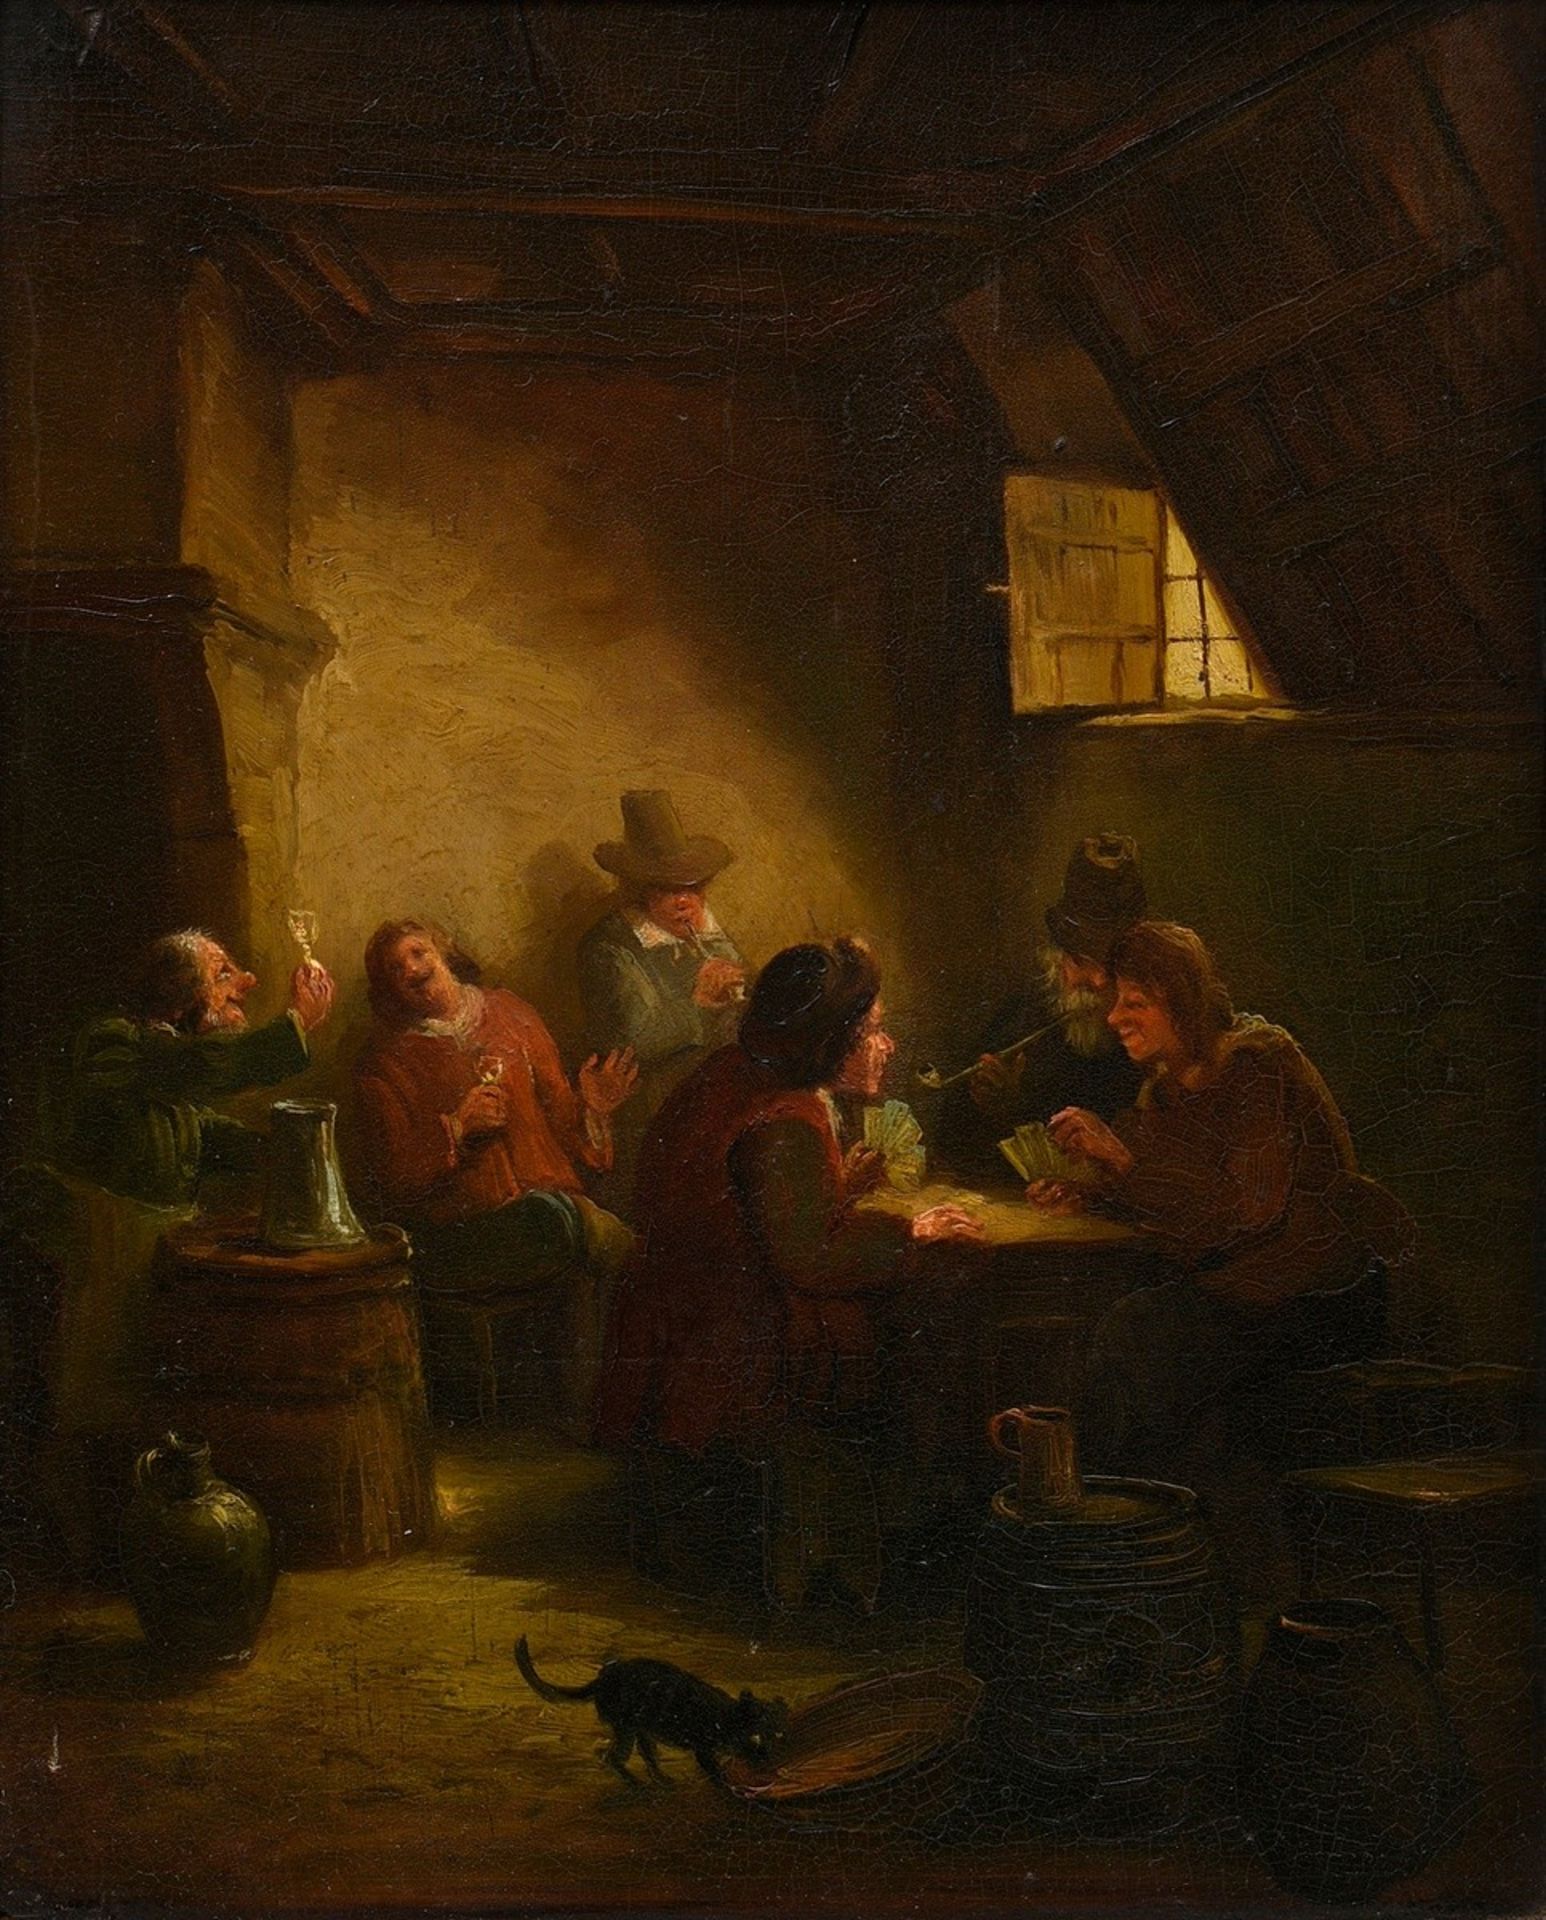 Unbekannter holländischer Maler des 18./19.Jh. "Kartenspieler und Trinker", Öl/Holz, 27,5x21,7cm (m